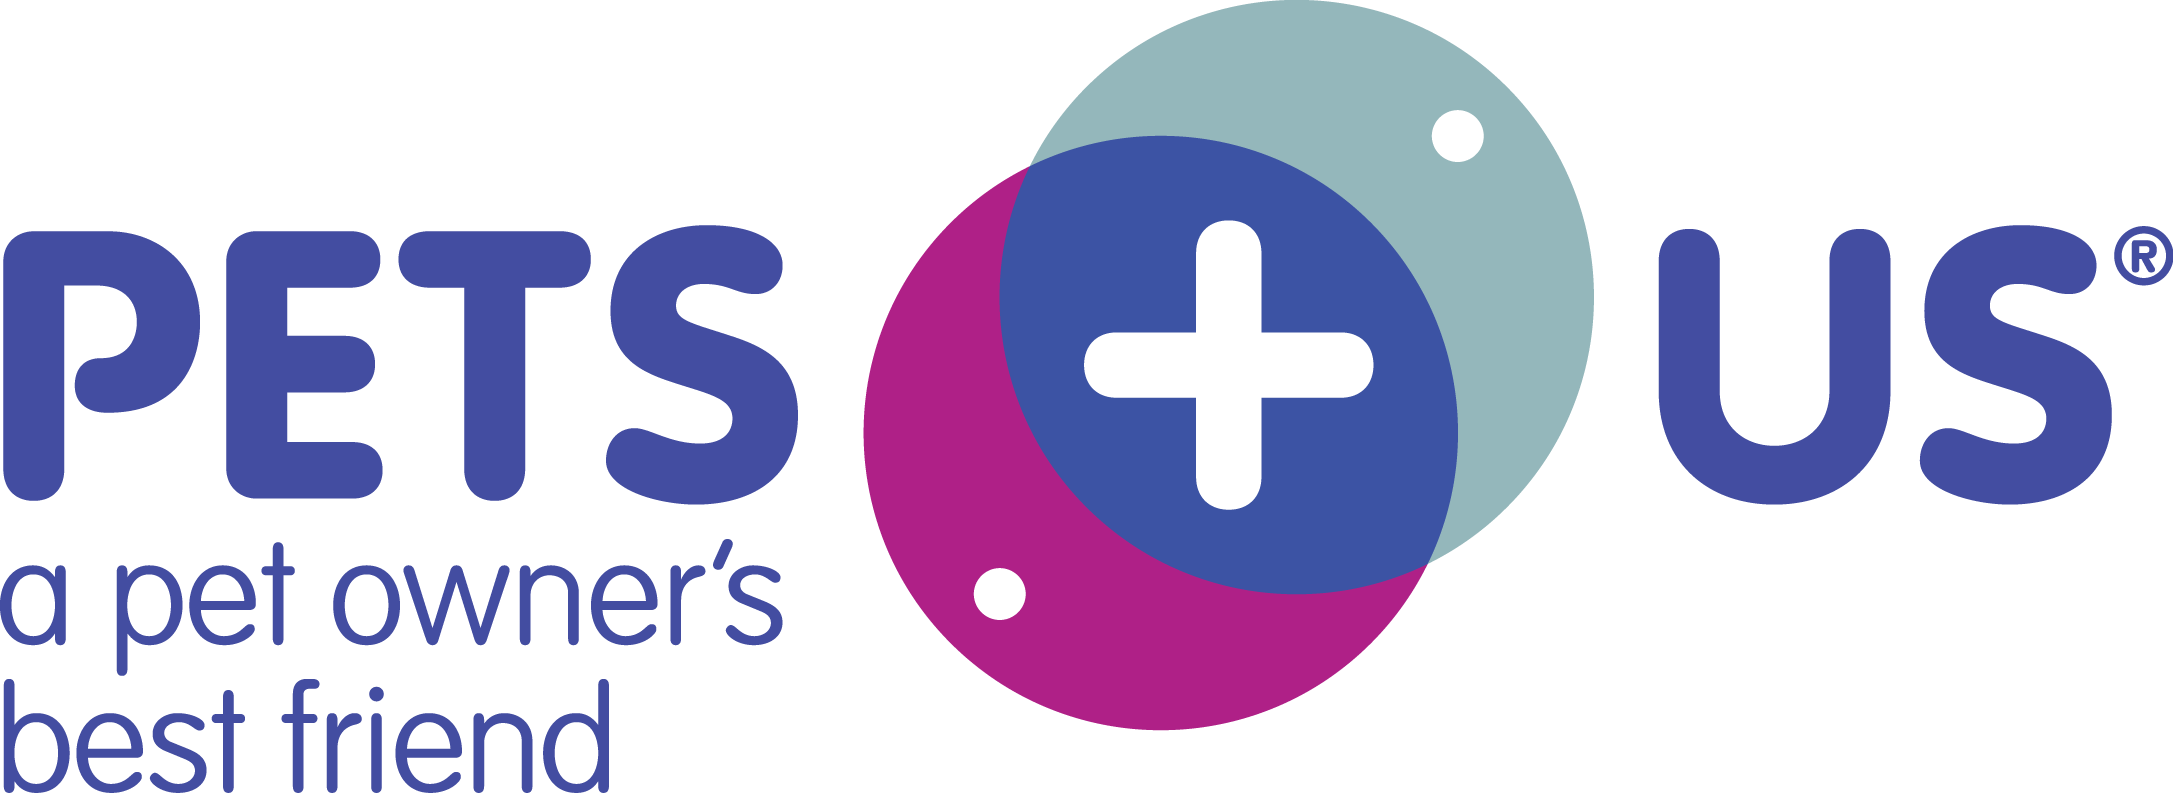 Ggole Plus Review Logo - Pets Plus Us | Pet Insurance Review